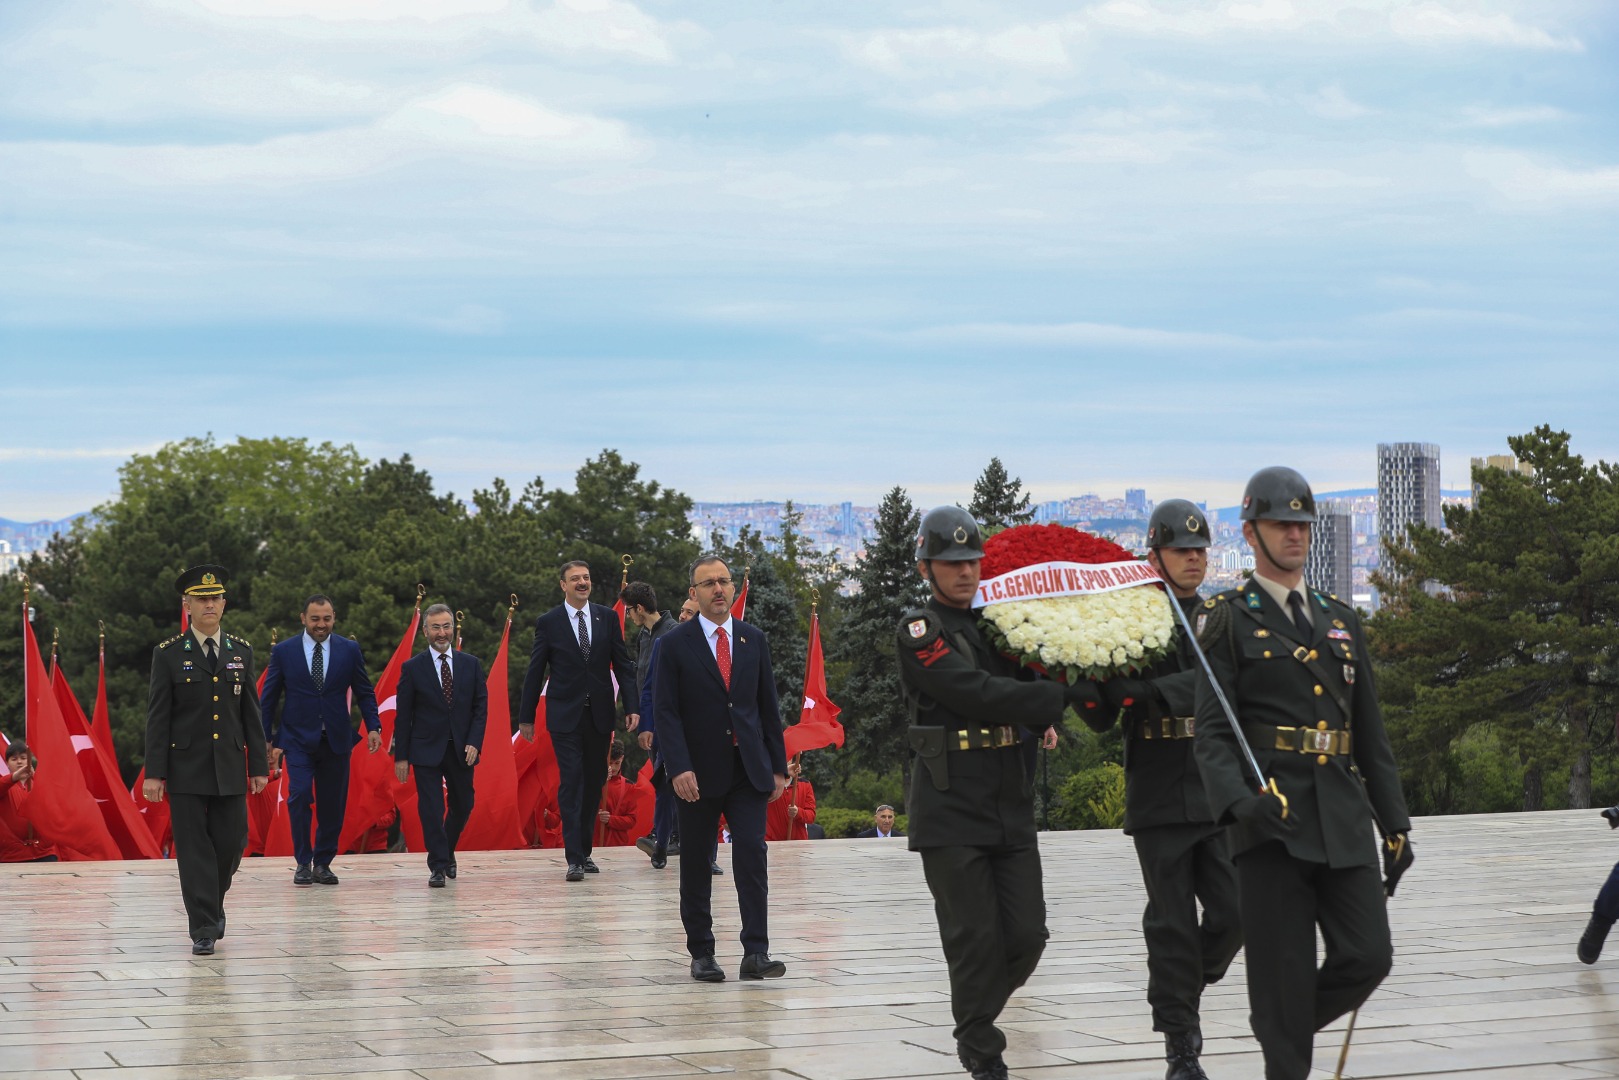 Milli sporcularımız Atatürk'ün huzuruna çıktı 24